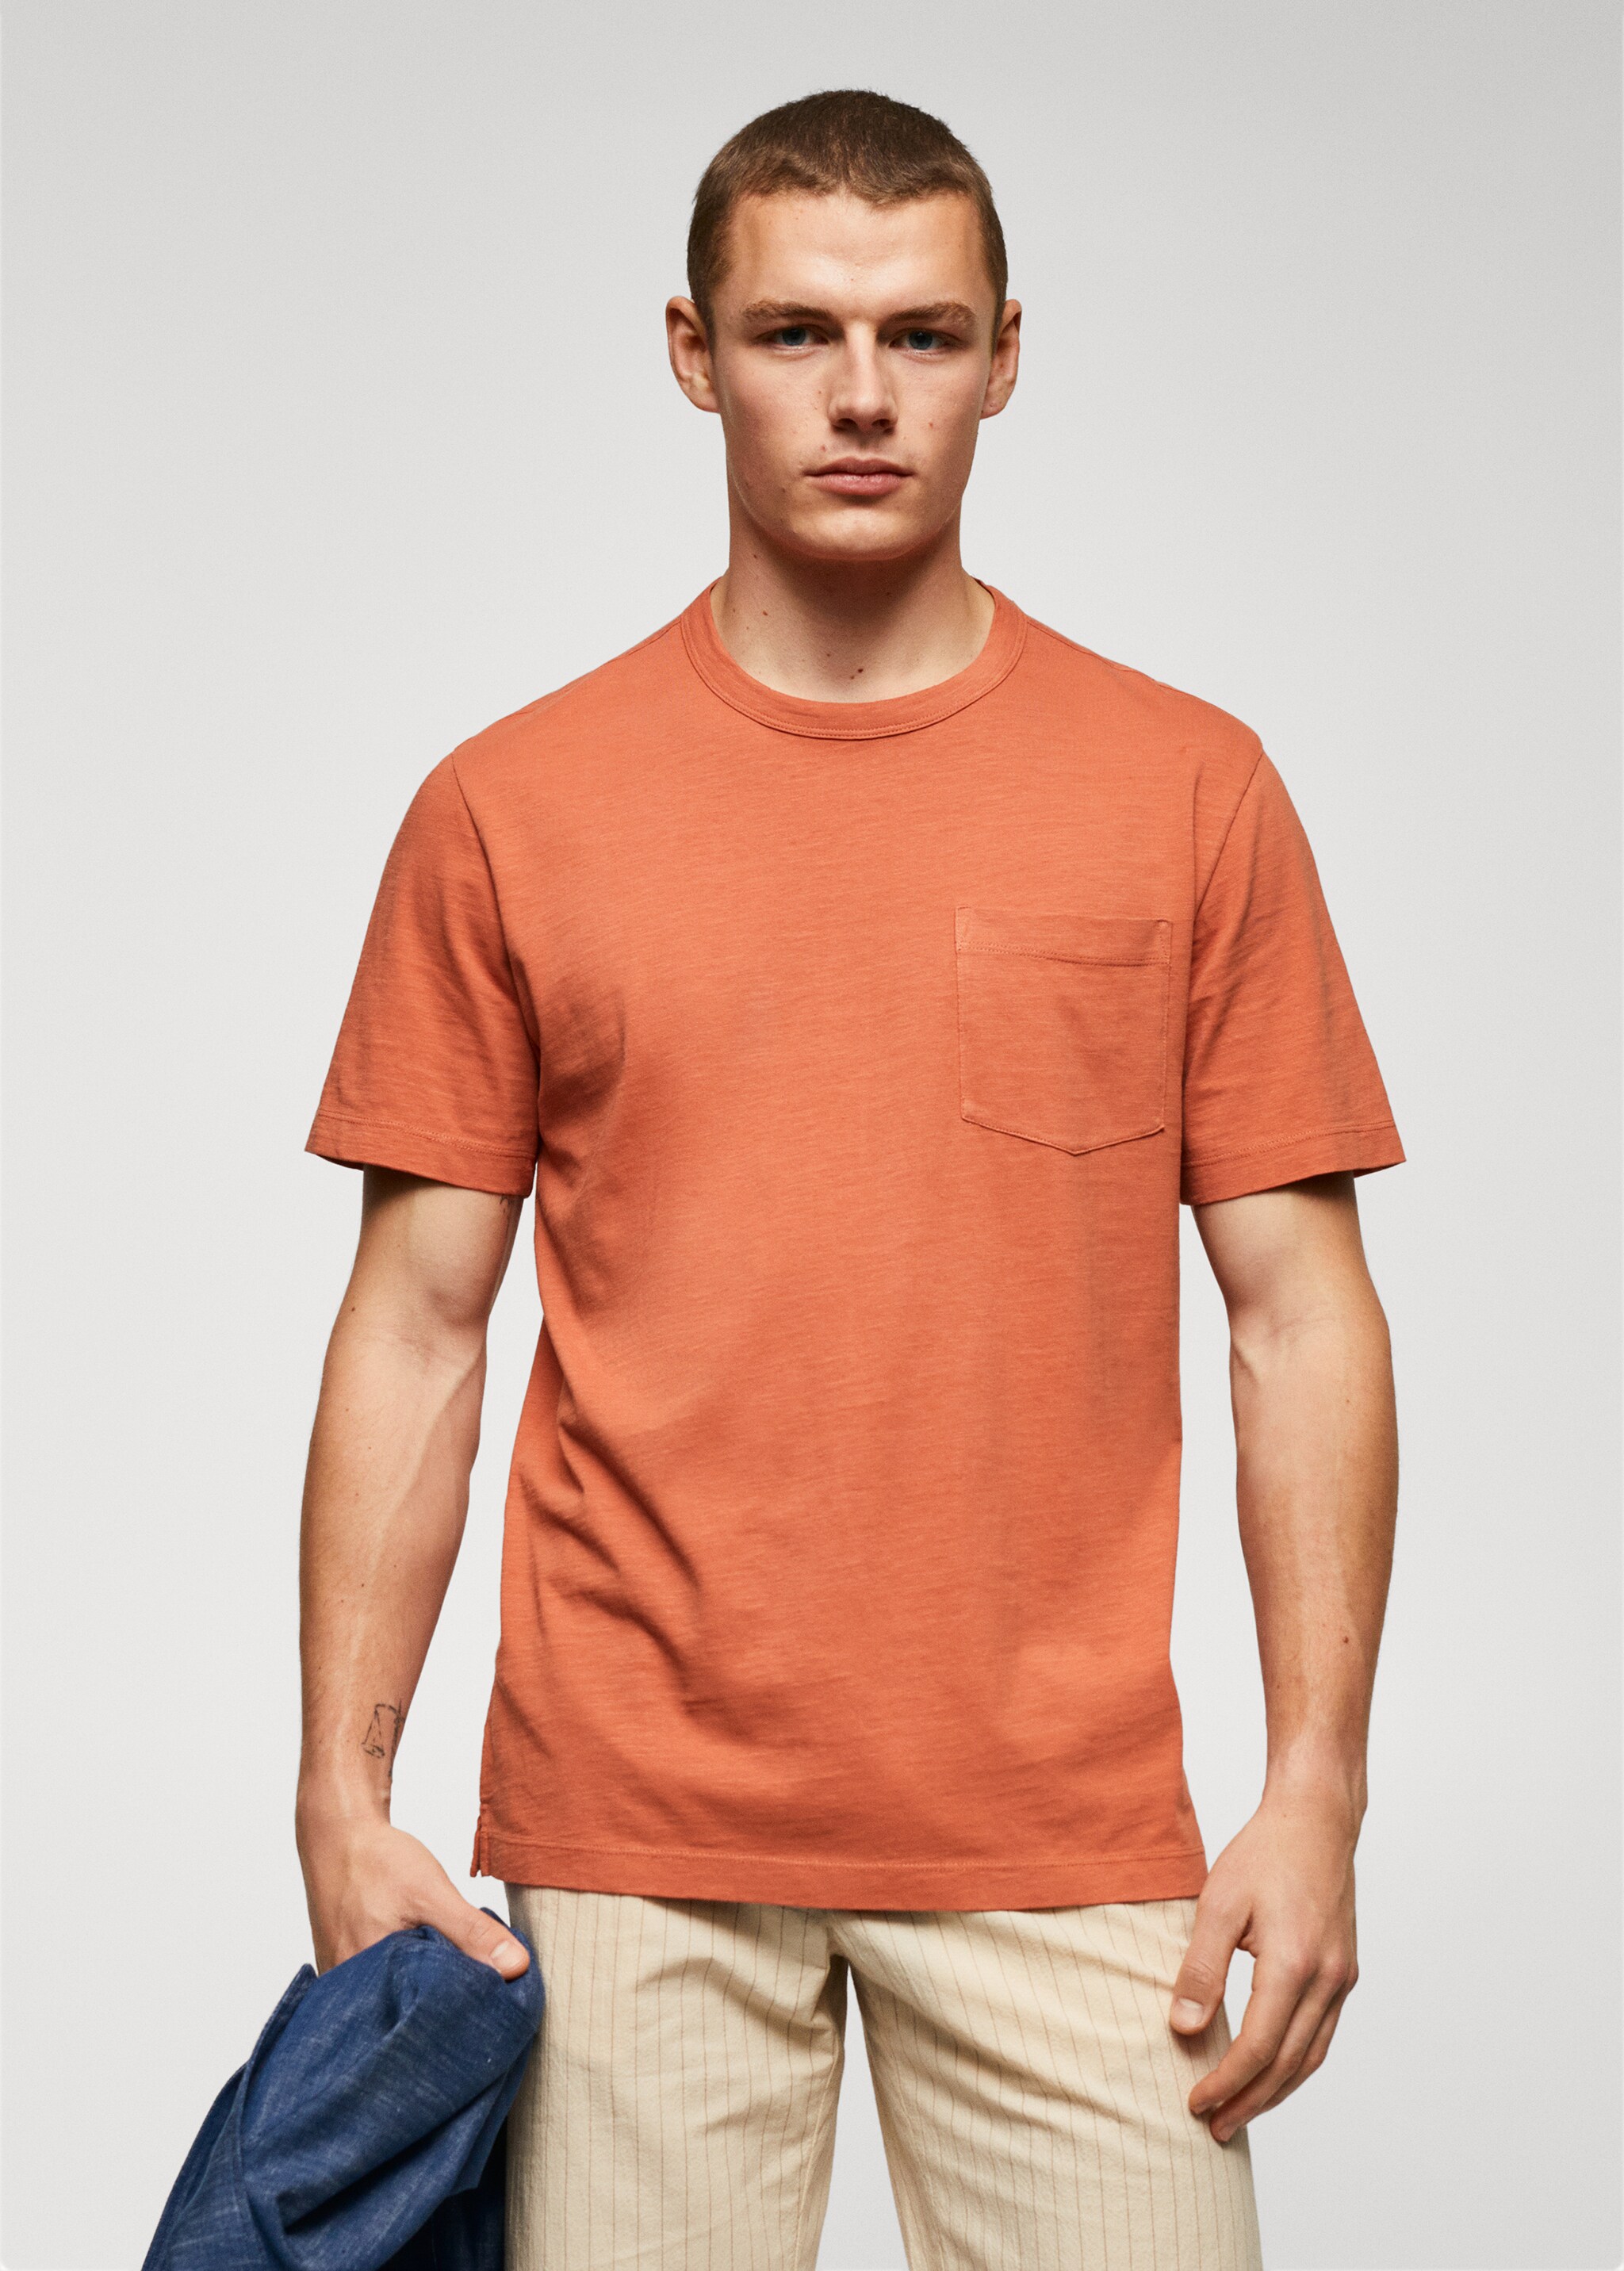 T-shirt poche 100 % coton - Plan moyen